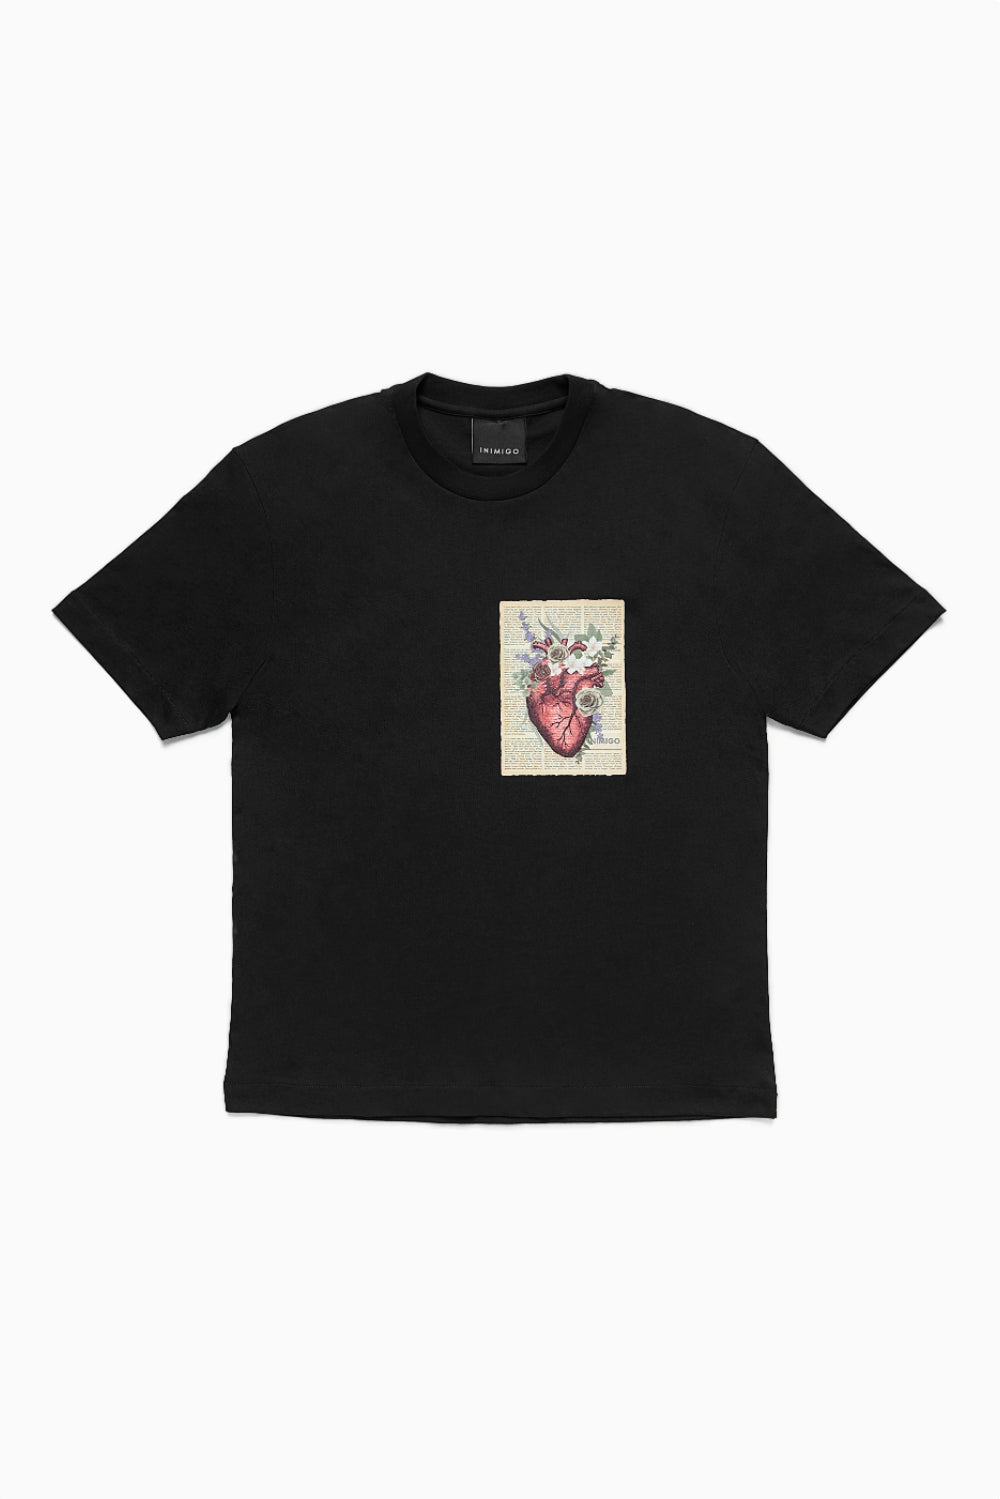 Flower Heart Letter Comfort T-shirt